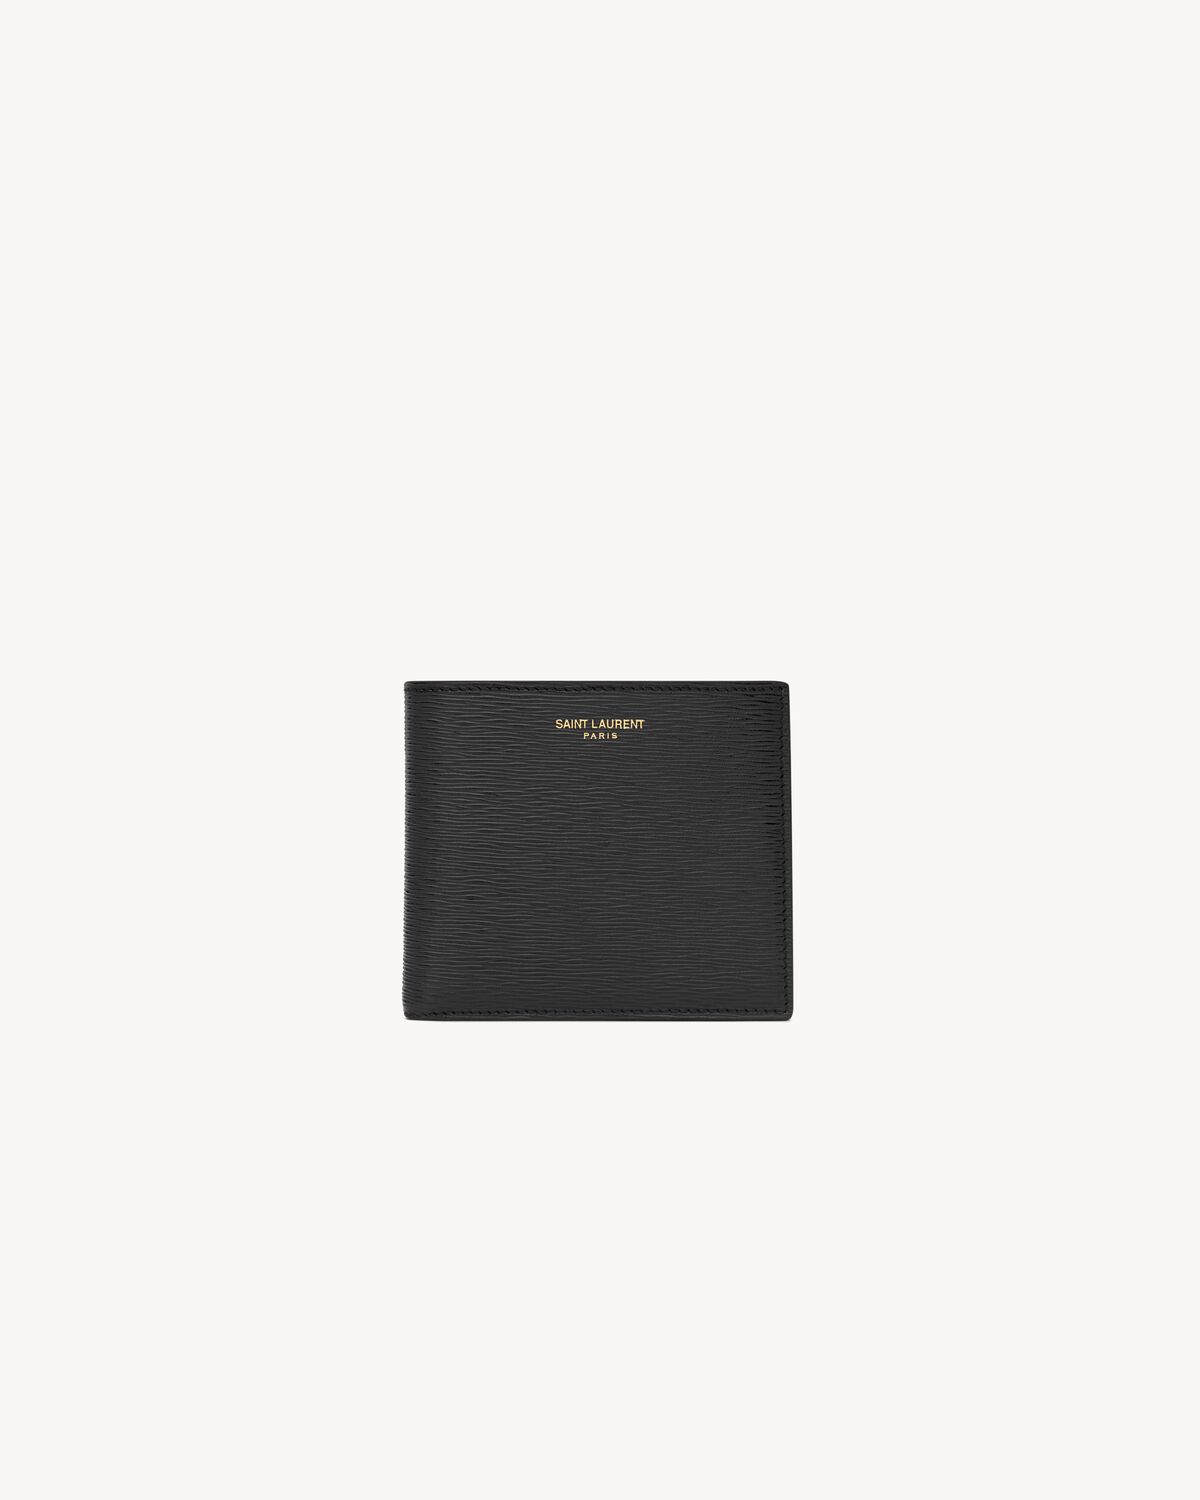 Saint Laurent Paris EAST/WEST wallet in ripple leather